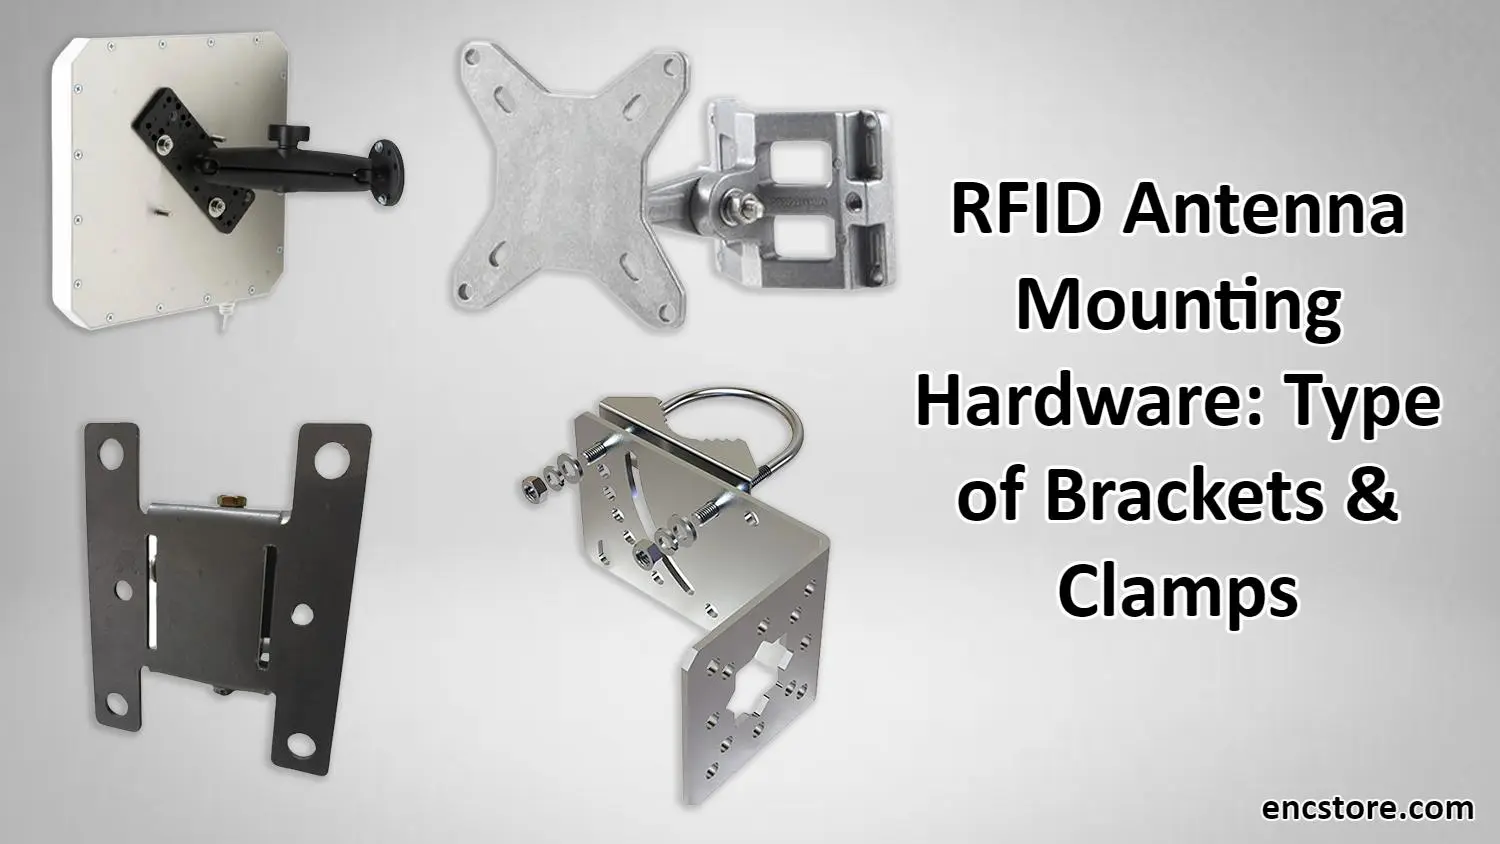 RFID Antenna Mounting Hardware